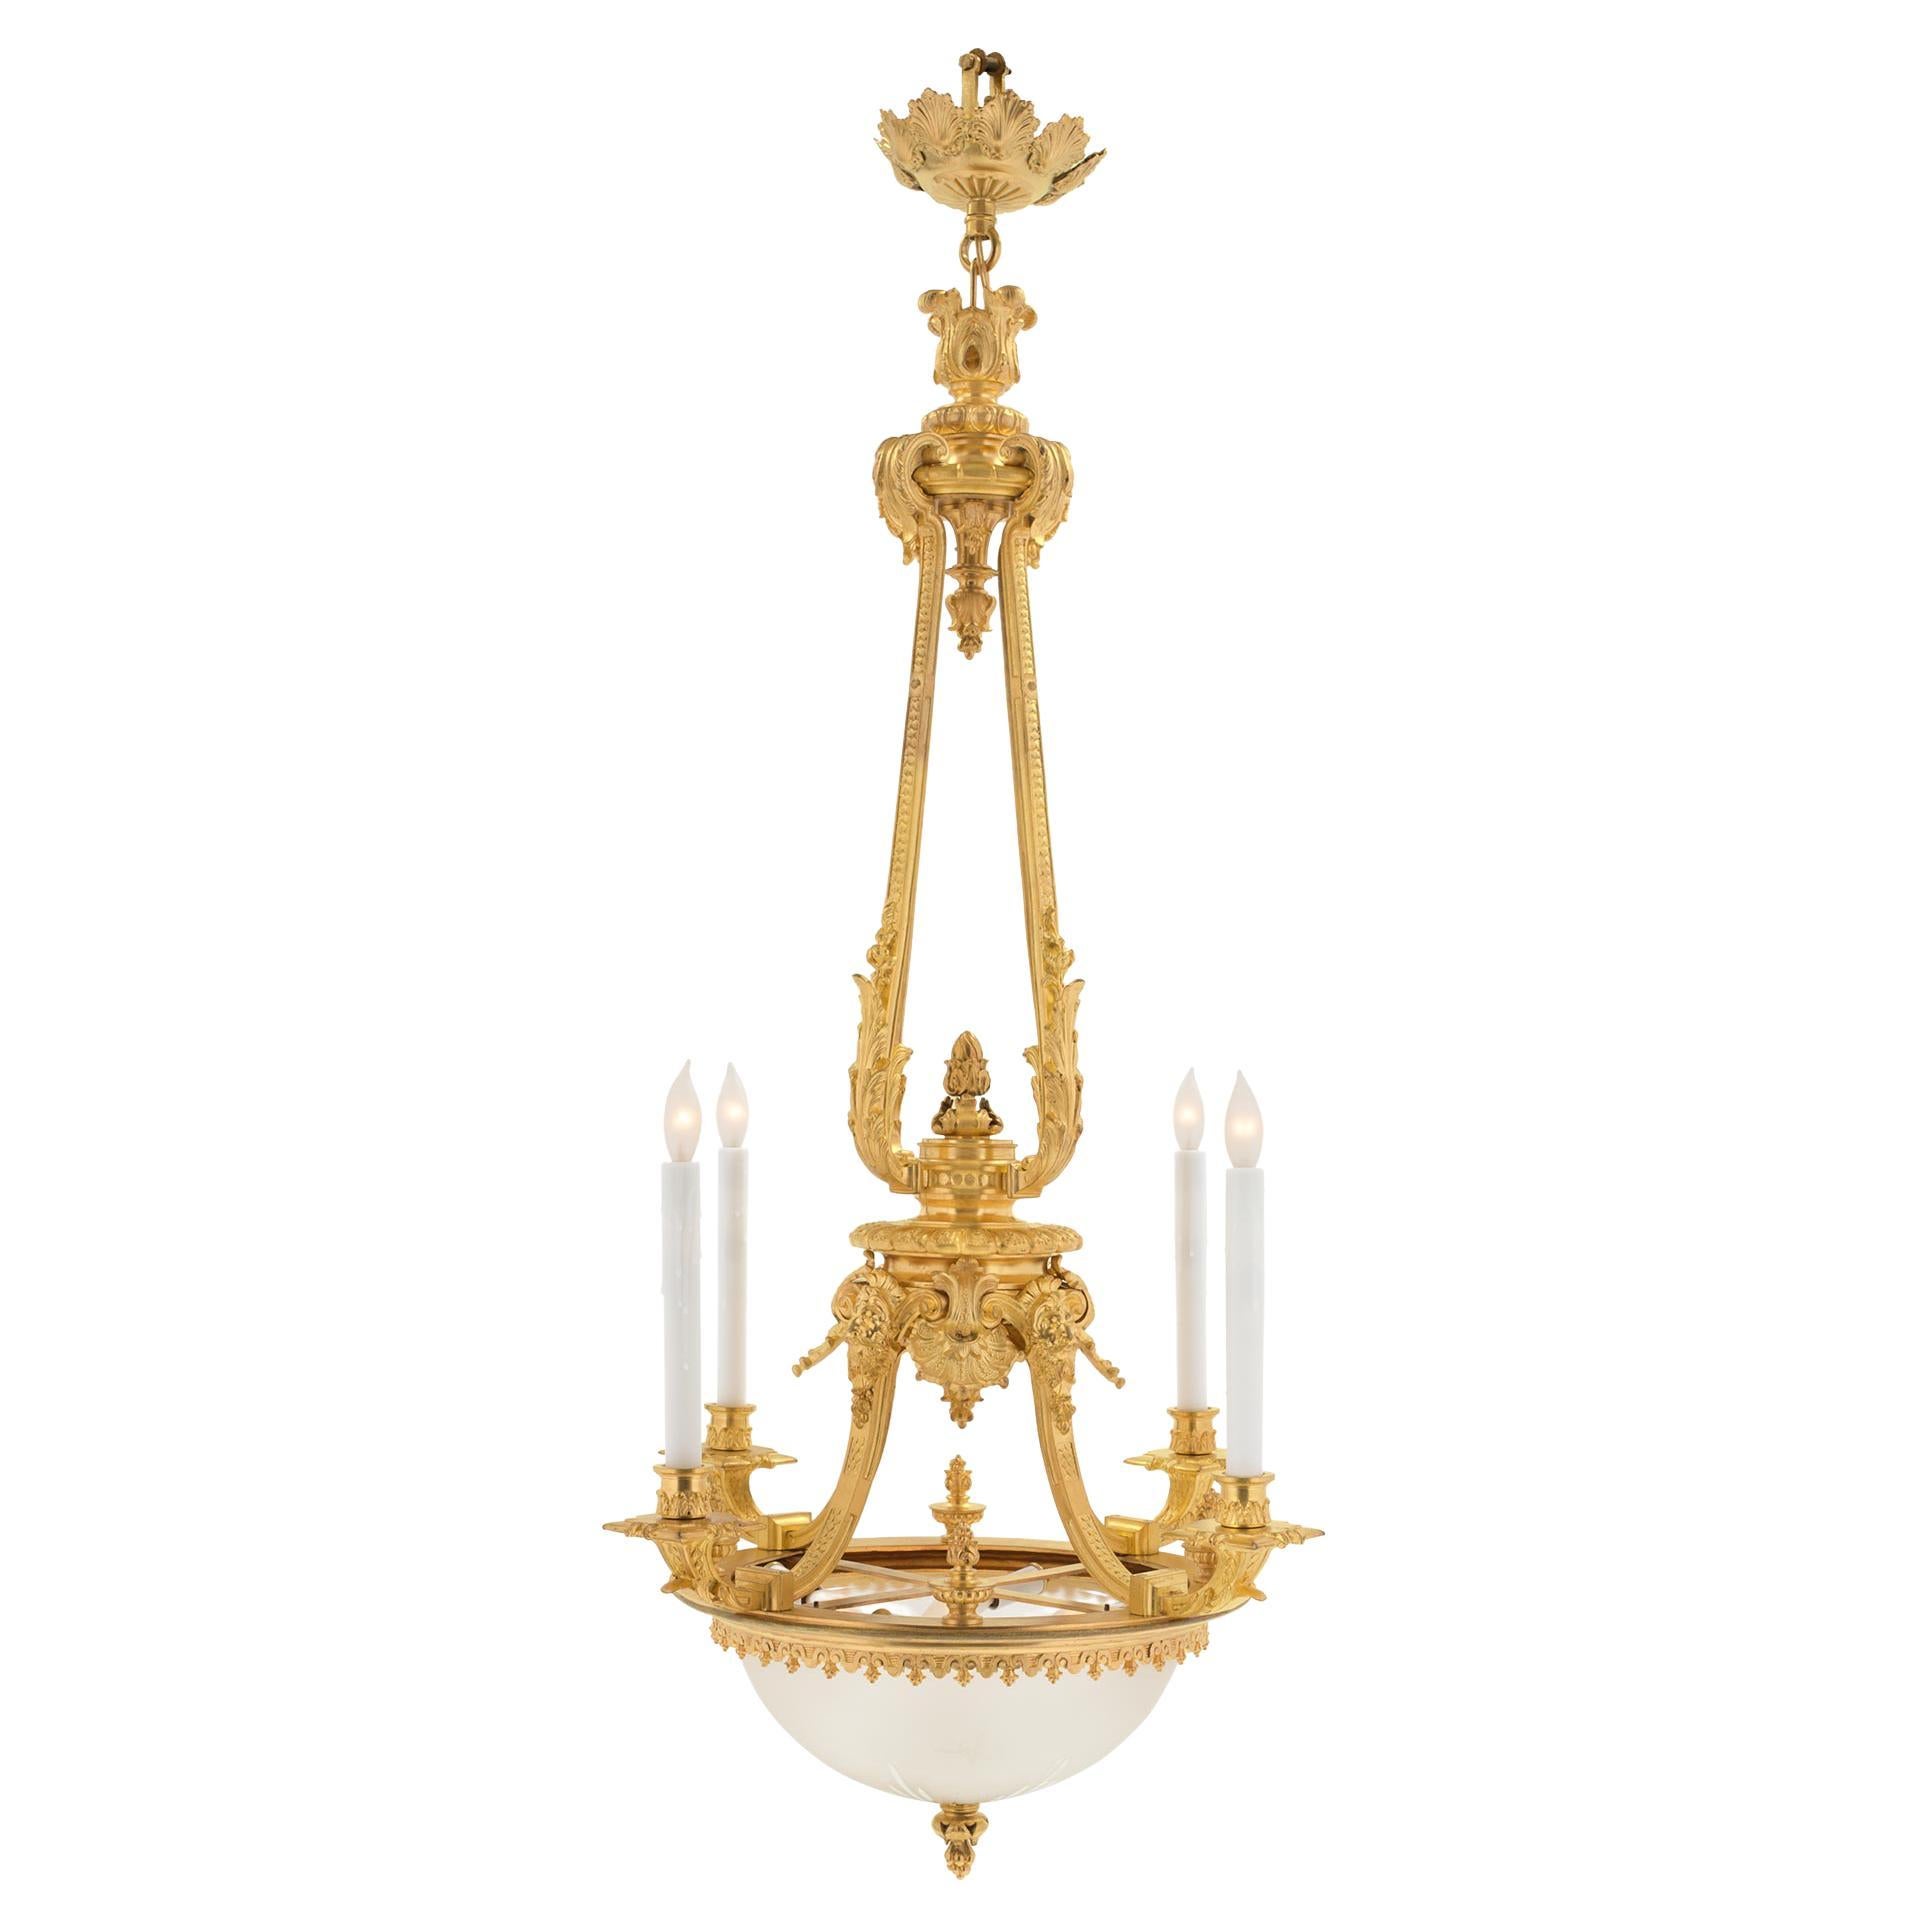 Lustre à quatre bras et huit lumières en bronze doré de style Louis XVI du XIXe siècle français